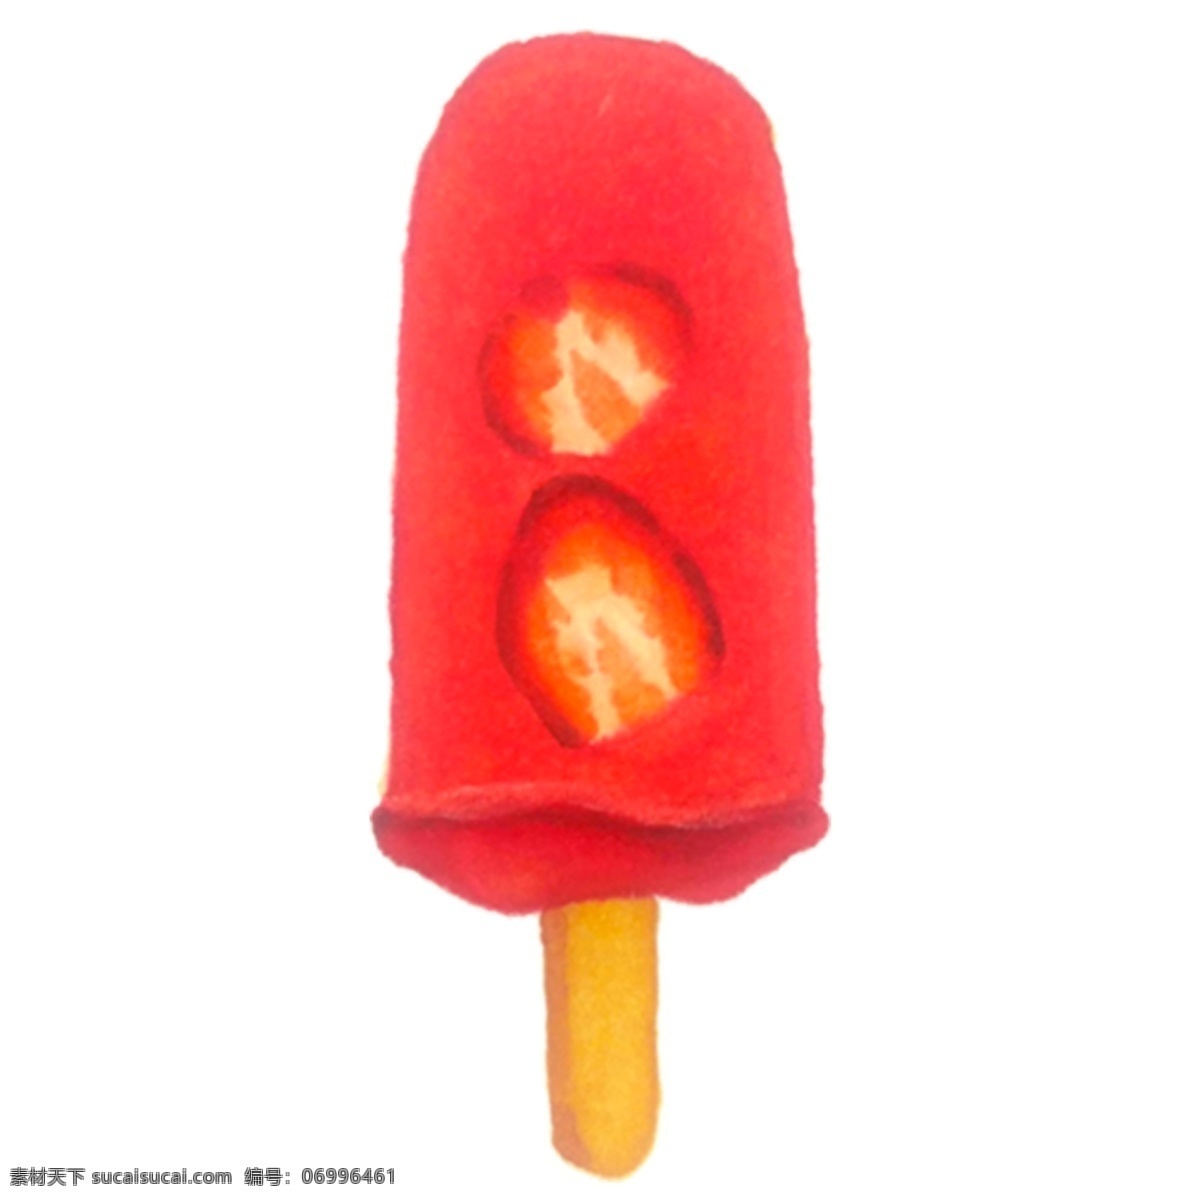 卡通 红色 草莓 冰棒 红色冰棒 冷饮 零度冰柜 冰箱里的冰柜 夏日解署 卡通冰棒 美味冰棒